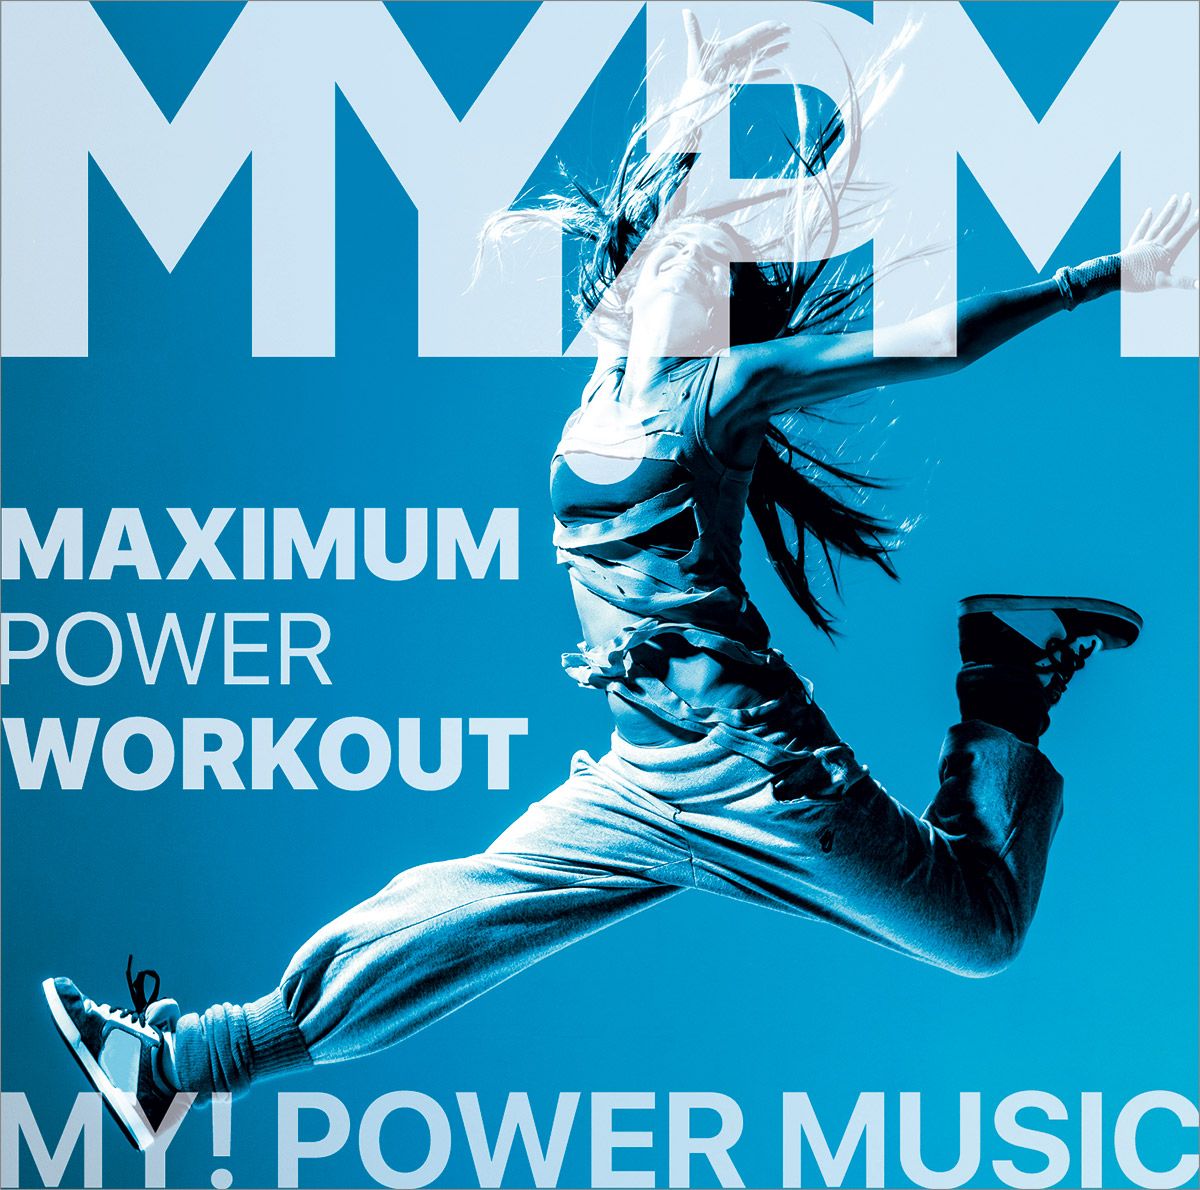 Power Workout. Music Power. Workout Music. Maximum power